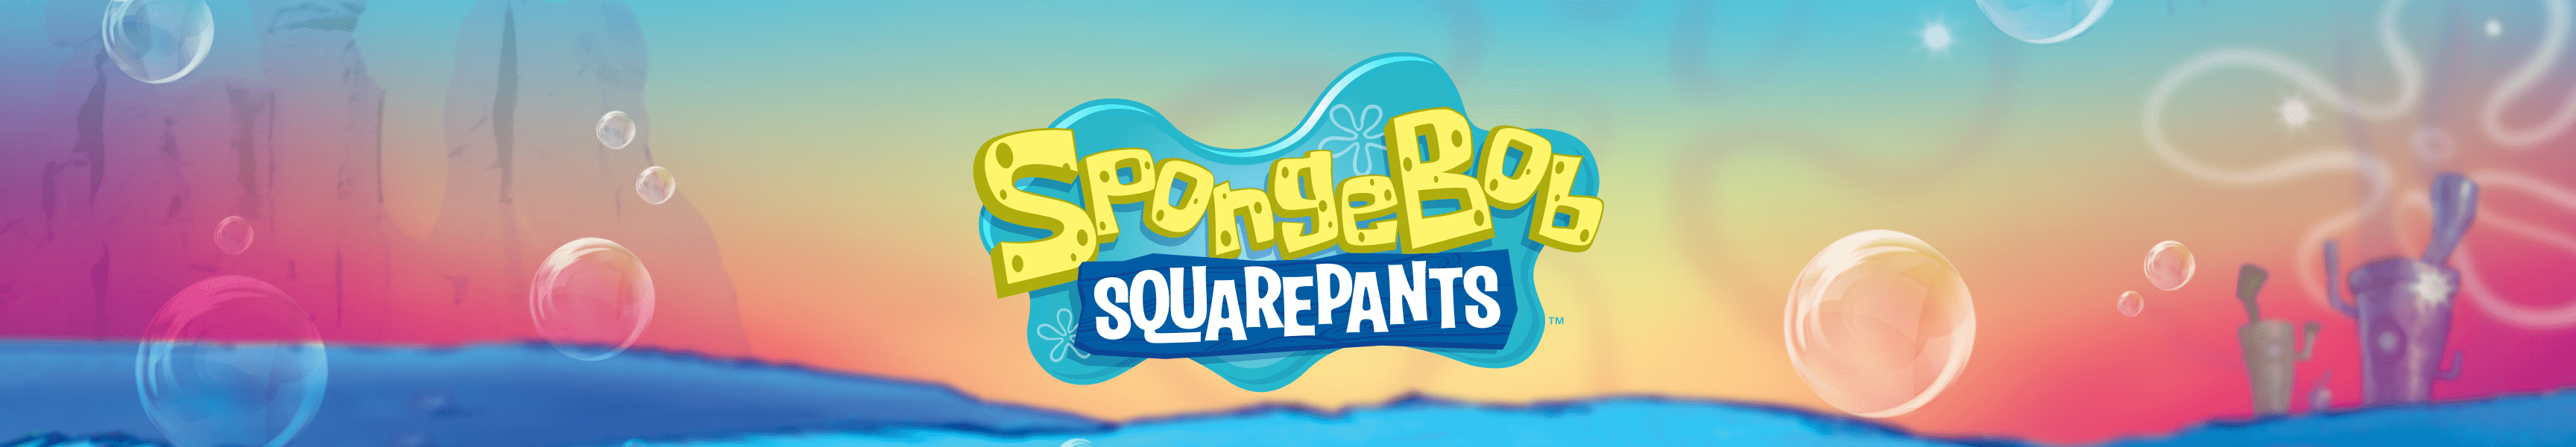 SpongeBob SquarePants Bags & Backpacks